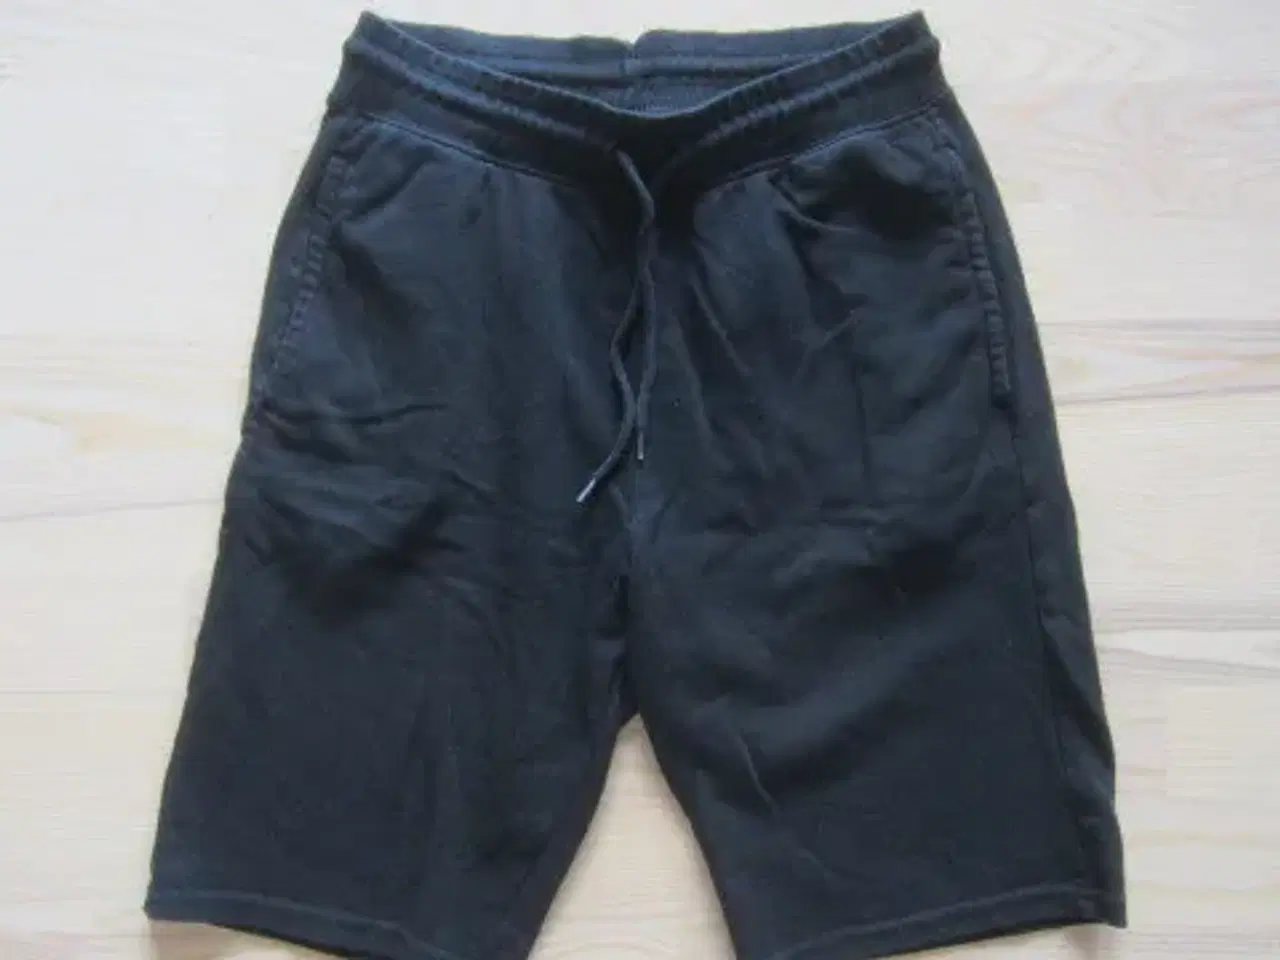 Billede 1 - Str. 164, næsten nye sorte shorts